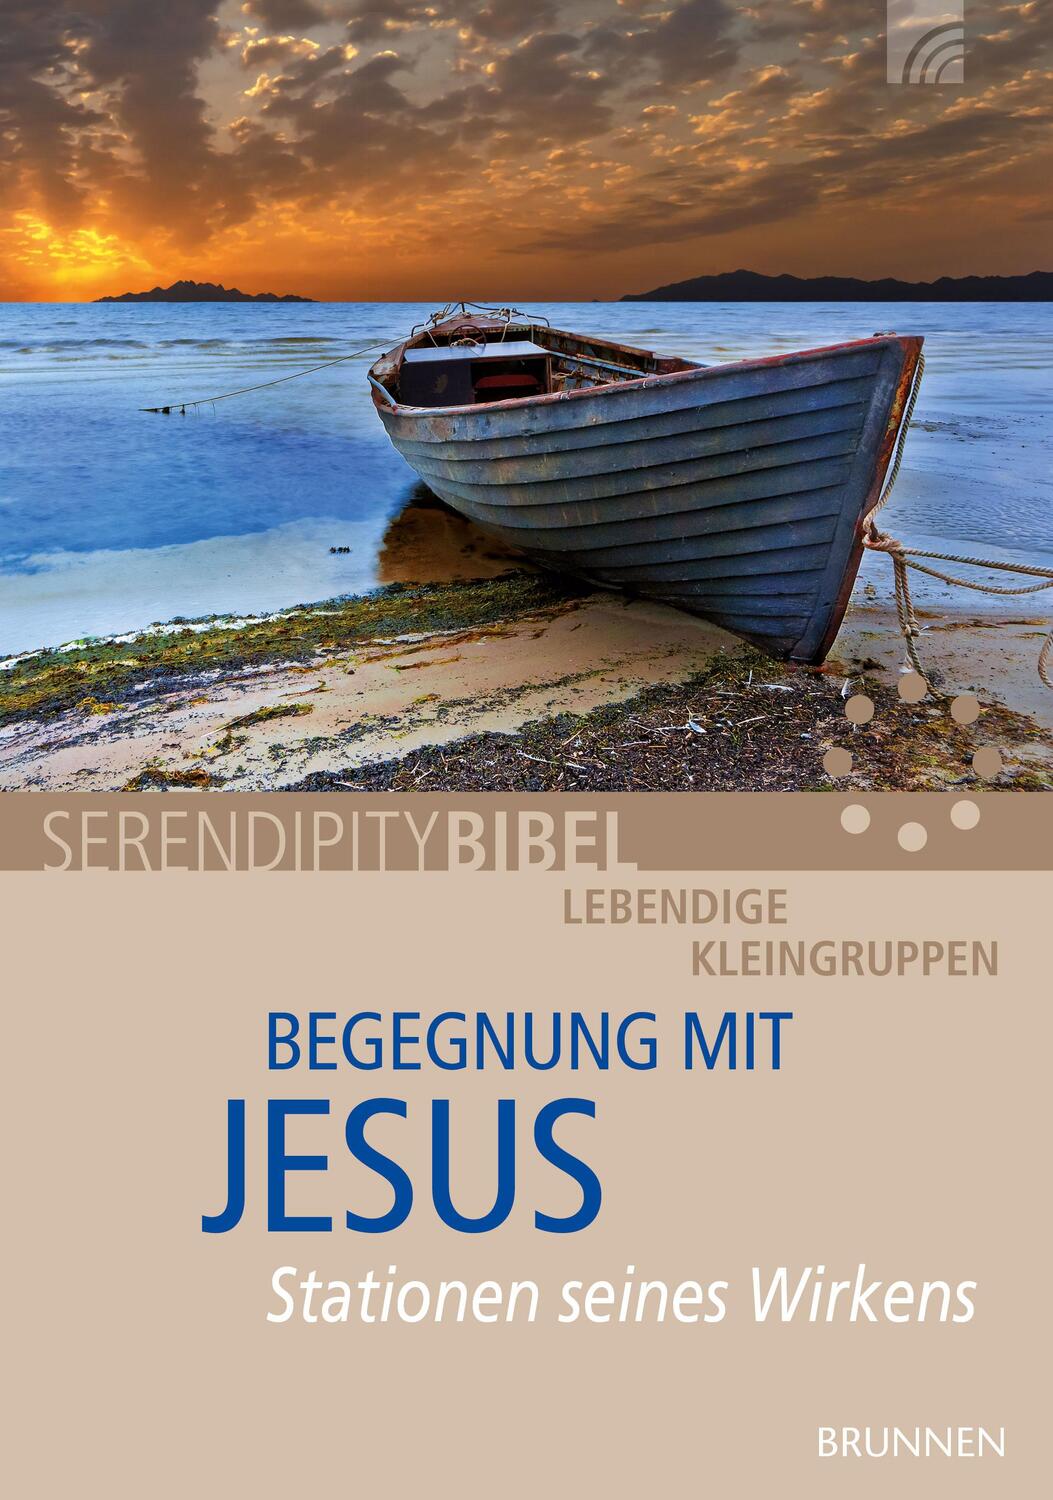 Begegnung mit Jesus - Serendipity bibel